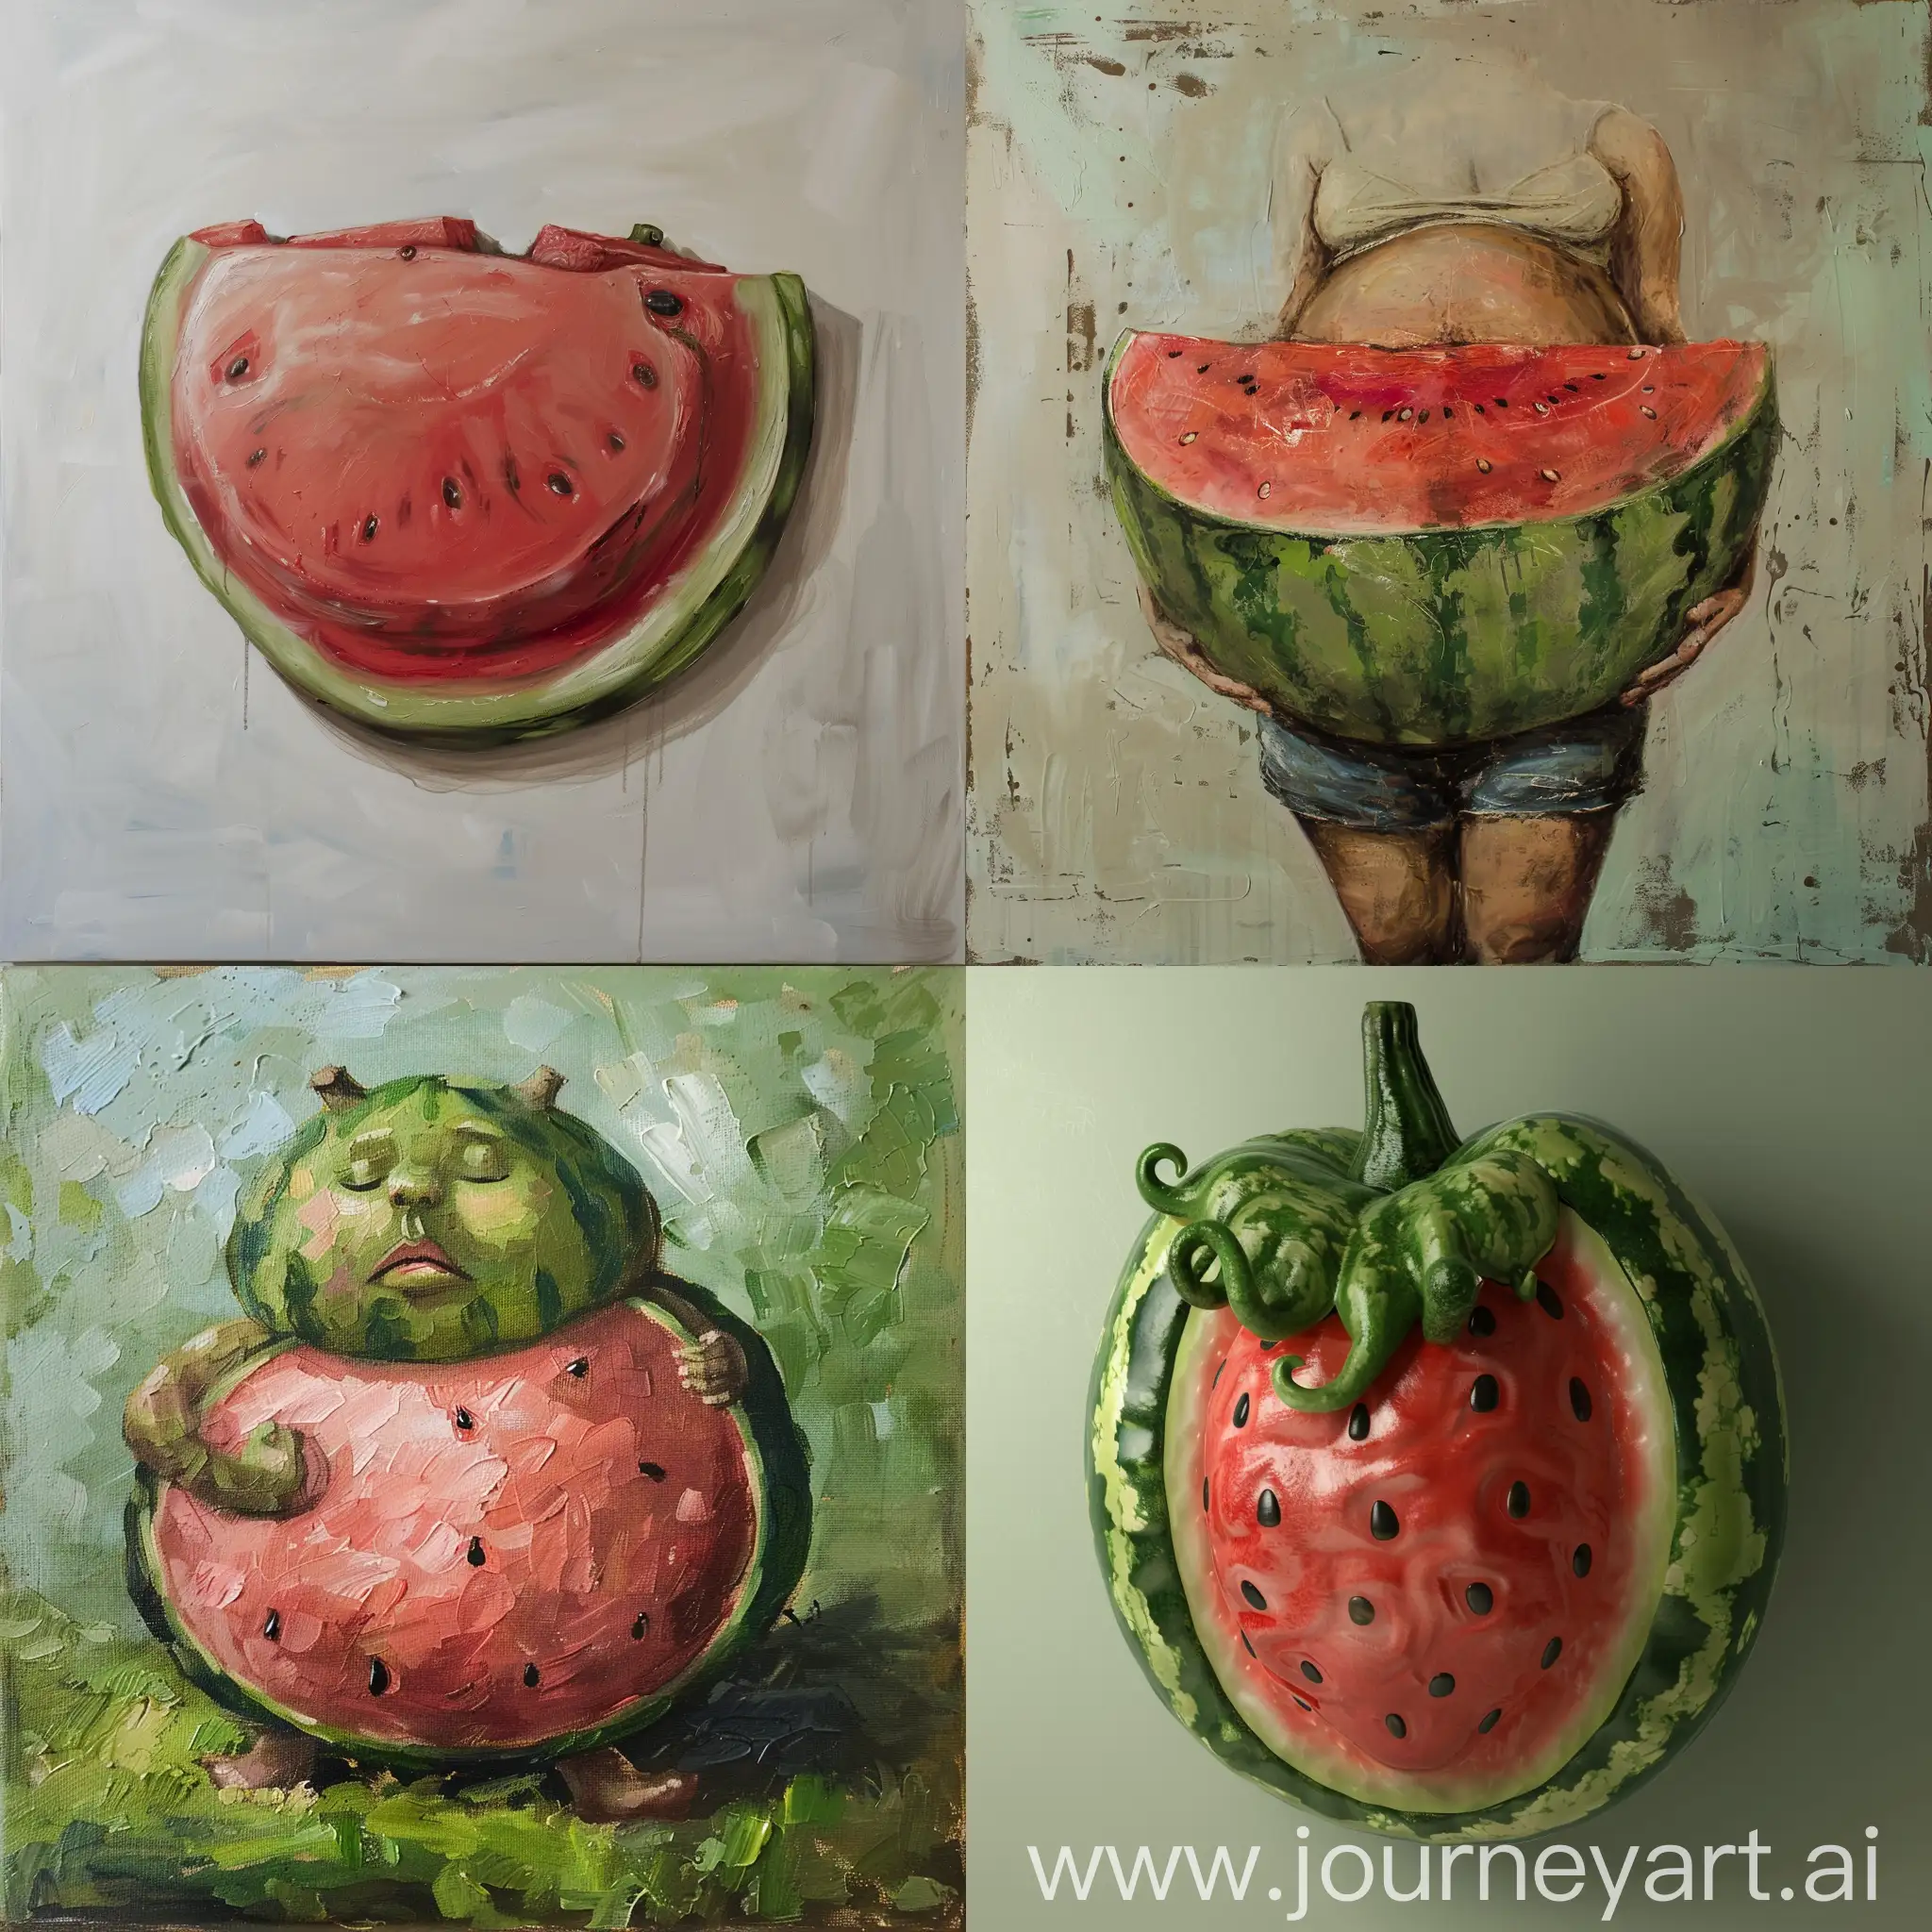 Juicy-Watermelon-Slices-on-Display